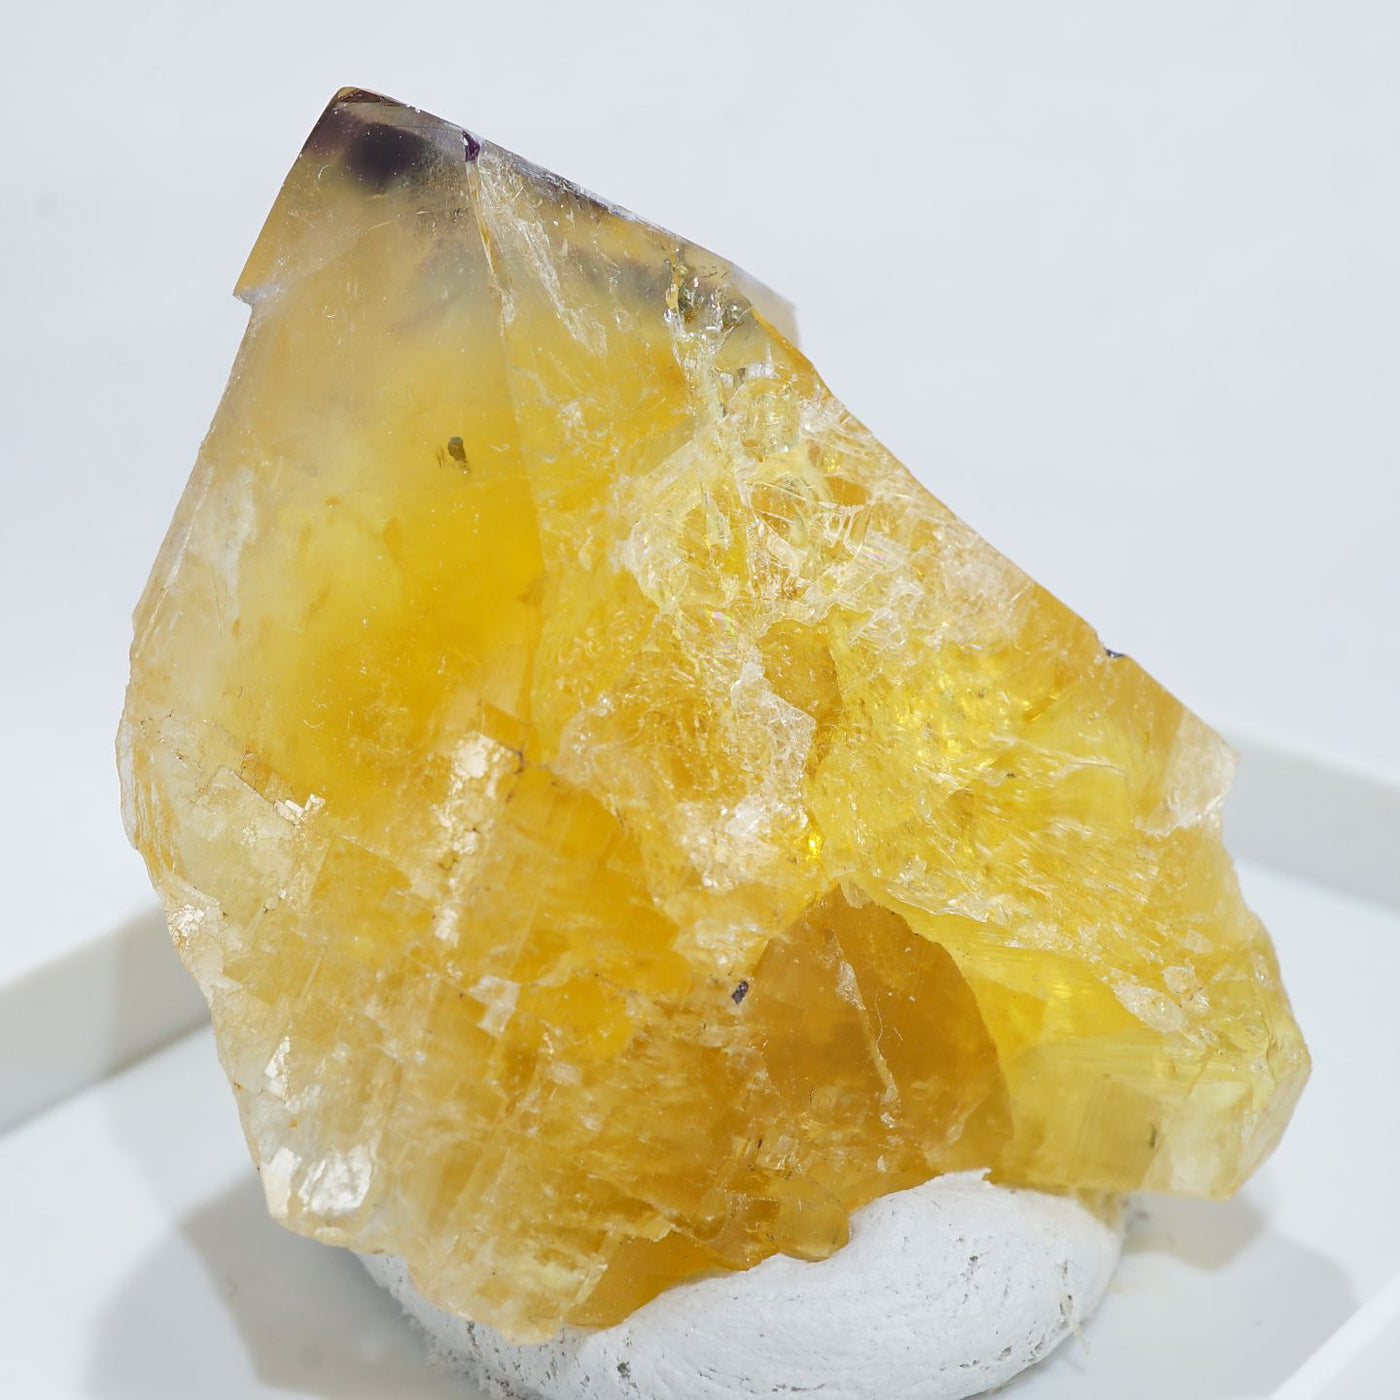 フランス Valzergues(バルゼルグ)産 フローライト – 天然石ハッピーギフト